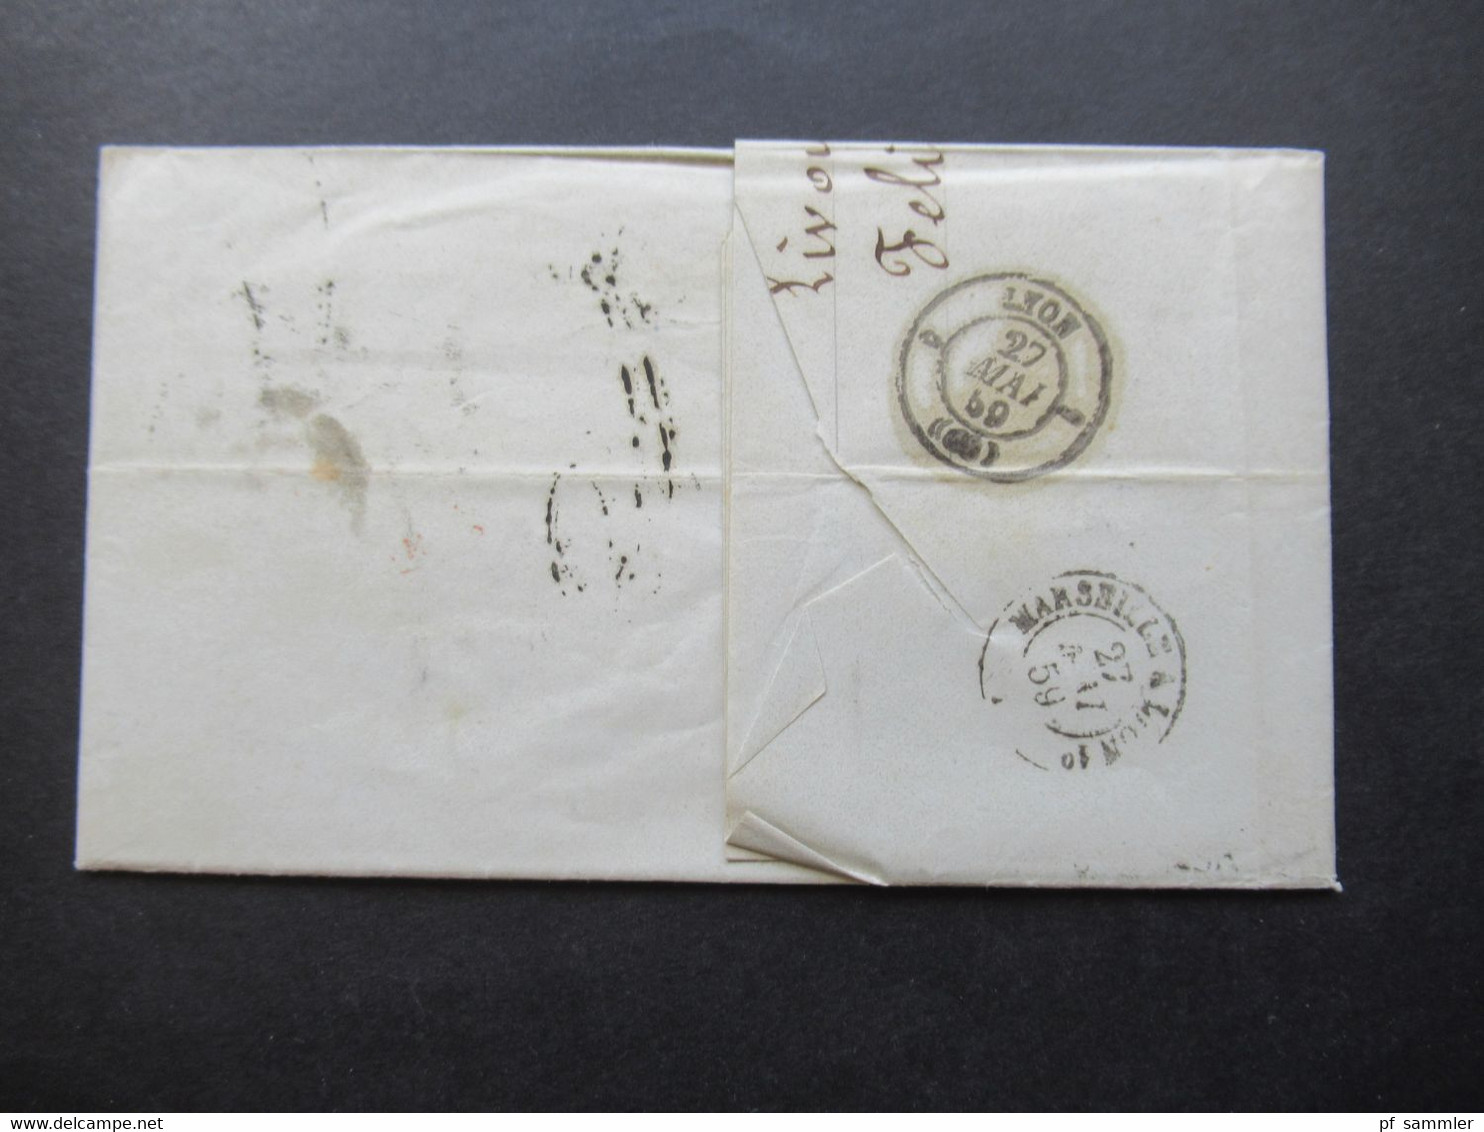 Auslandsbrief Mit Inhalt 1859 Livorno - Lyon Roter K2 Tosc Marseille Handschriftlicher Vermerk Vapeur Via Marseille - Toskana